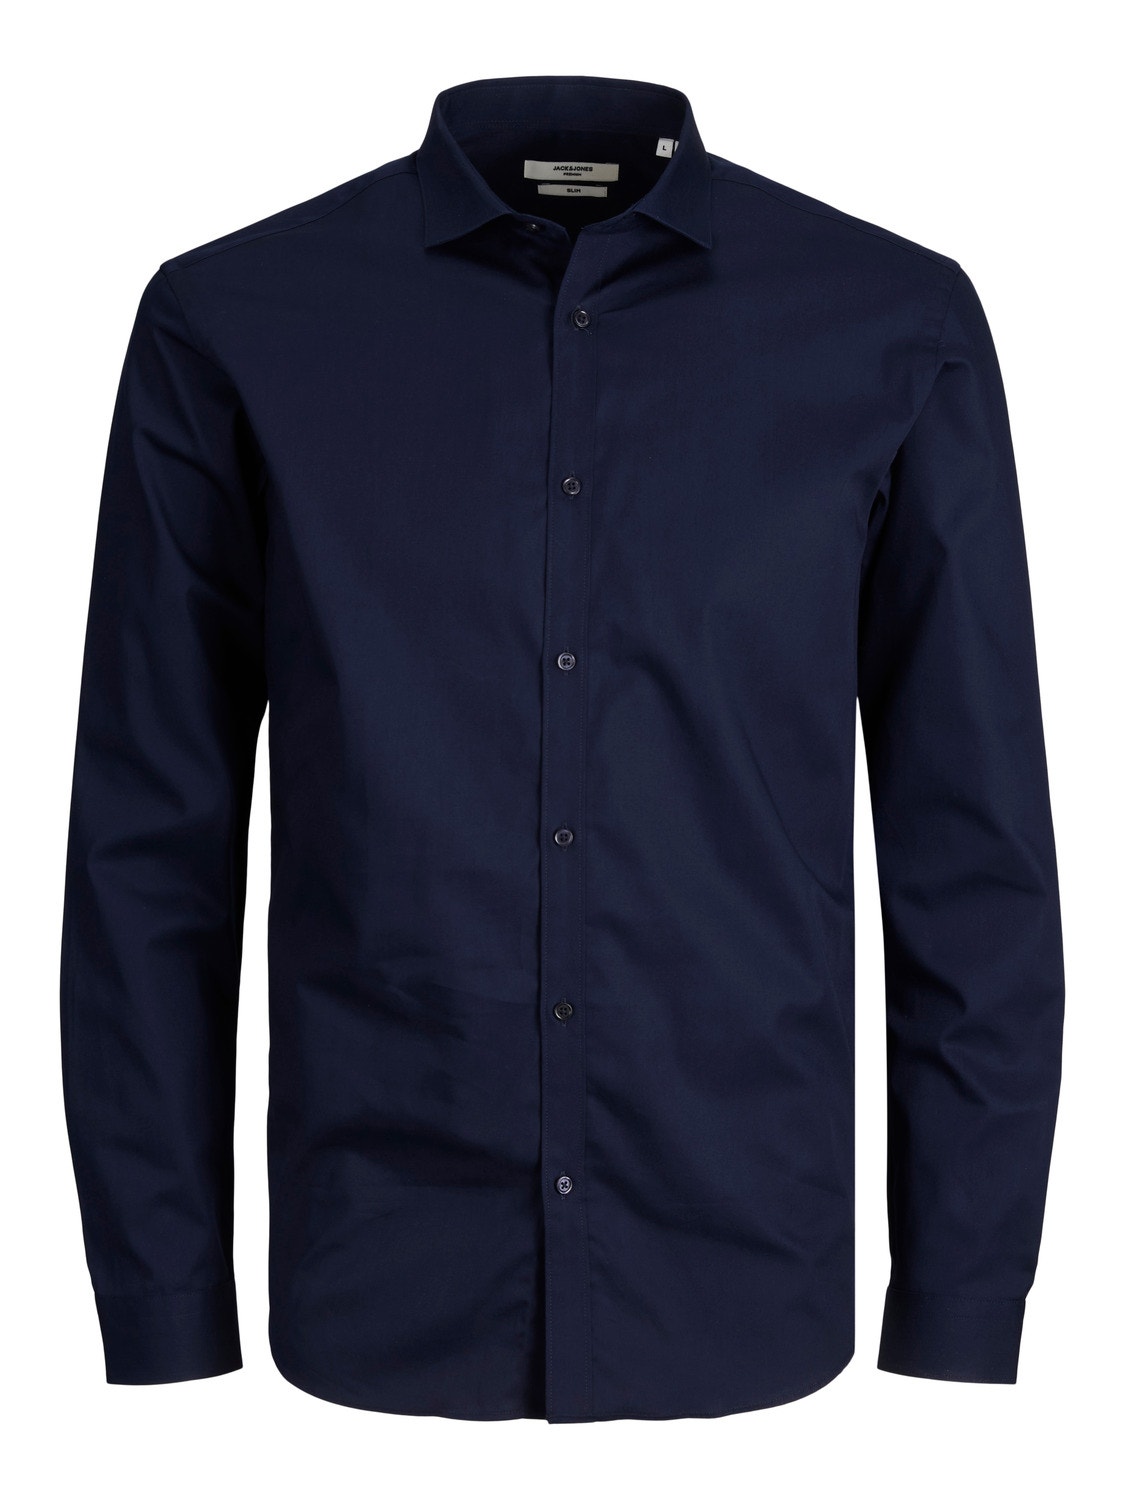 Jack & Jones Plus Loose Fit Společenská košile -Navy Blazer - 12235157